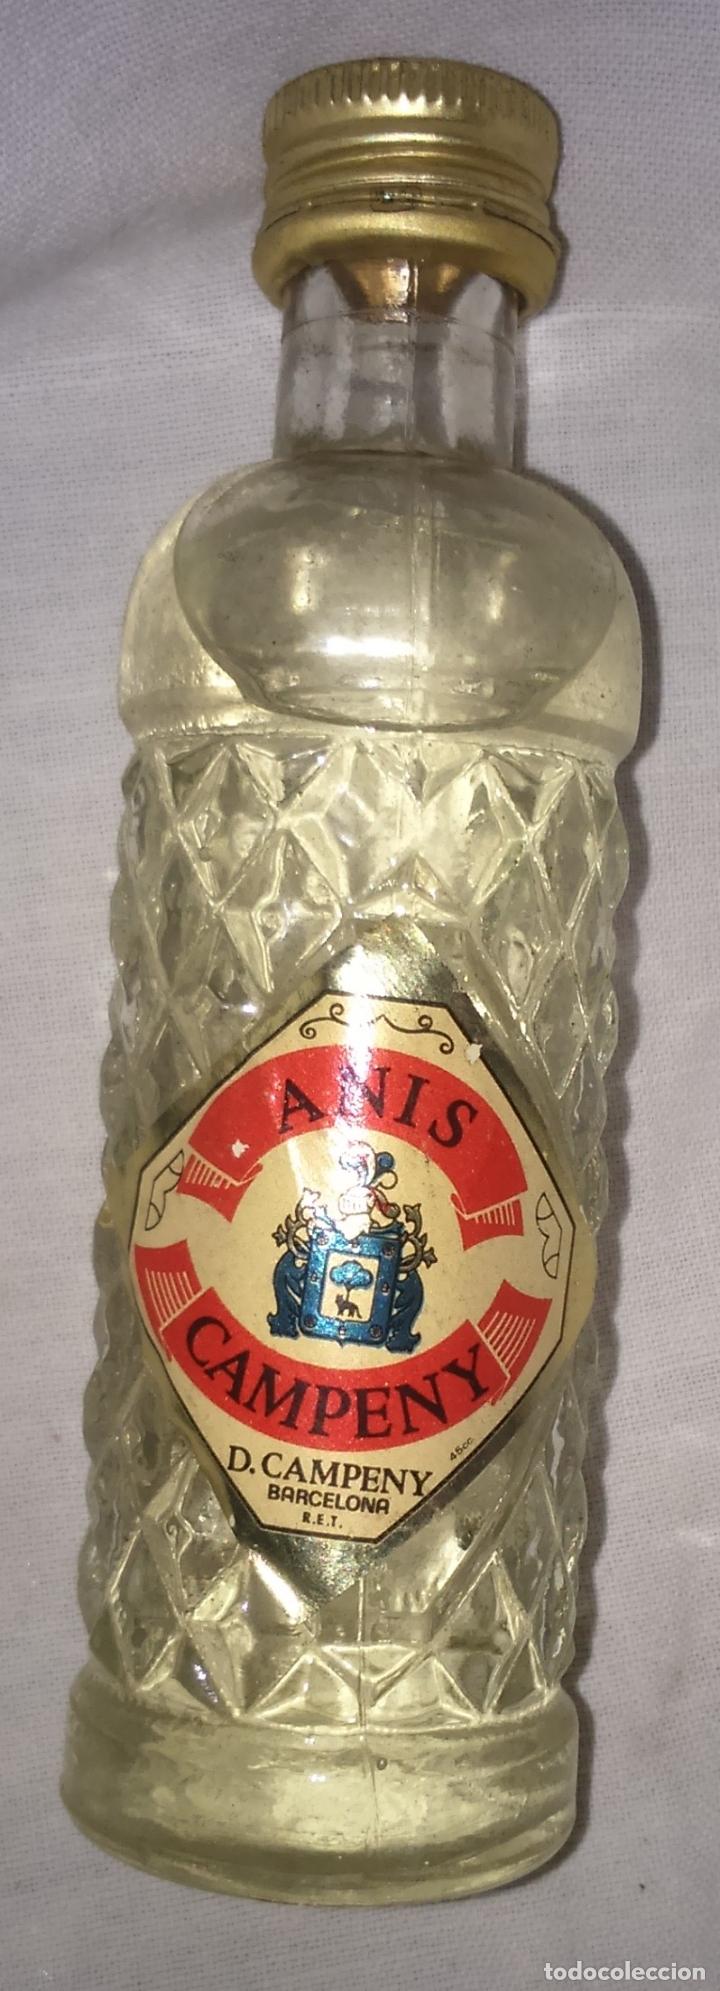 Botellas antiguas: BOTELLIN DE ANIS - CAMPENY DE BARCELONA - Foto 1 - 86488428